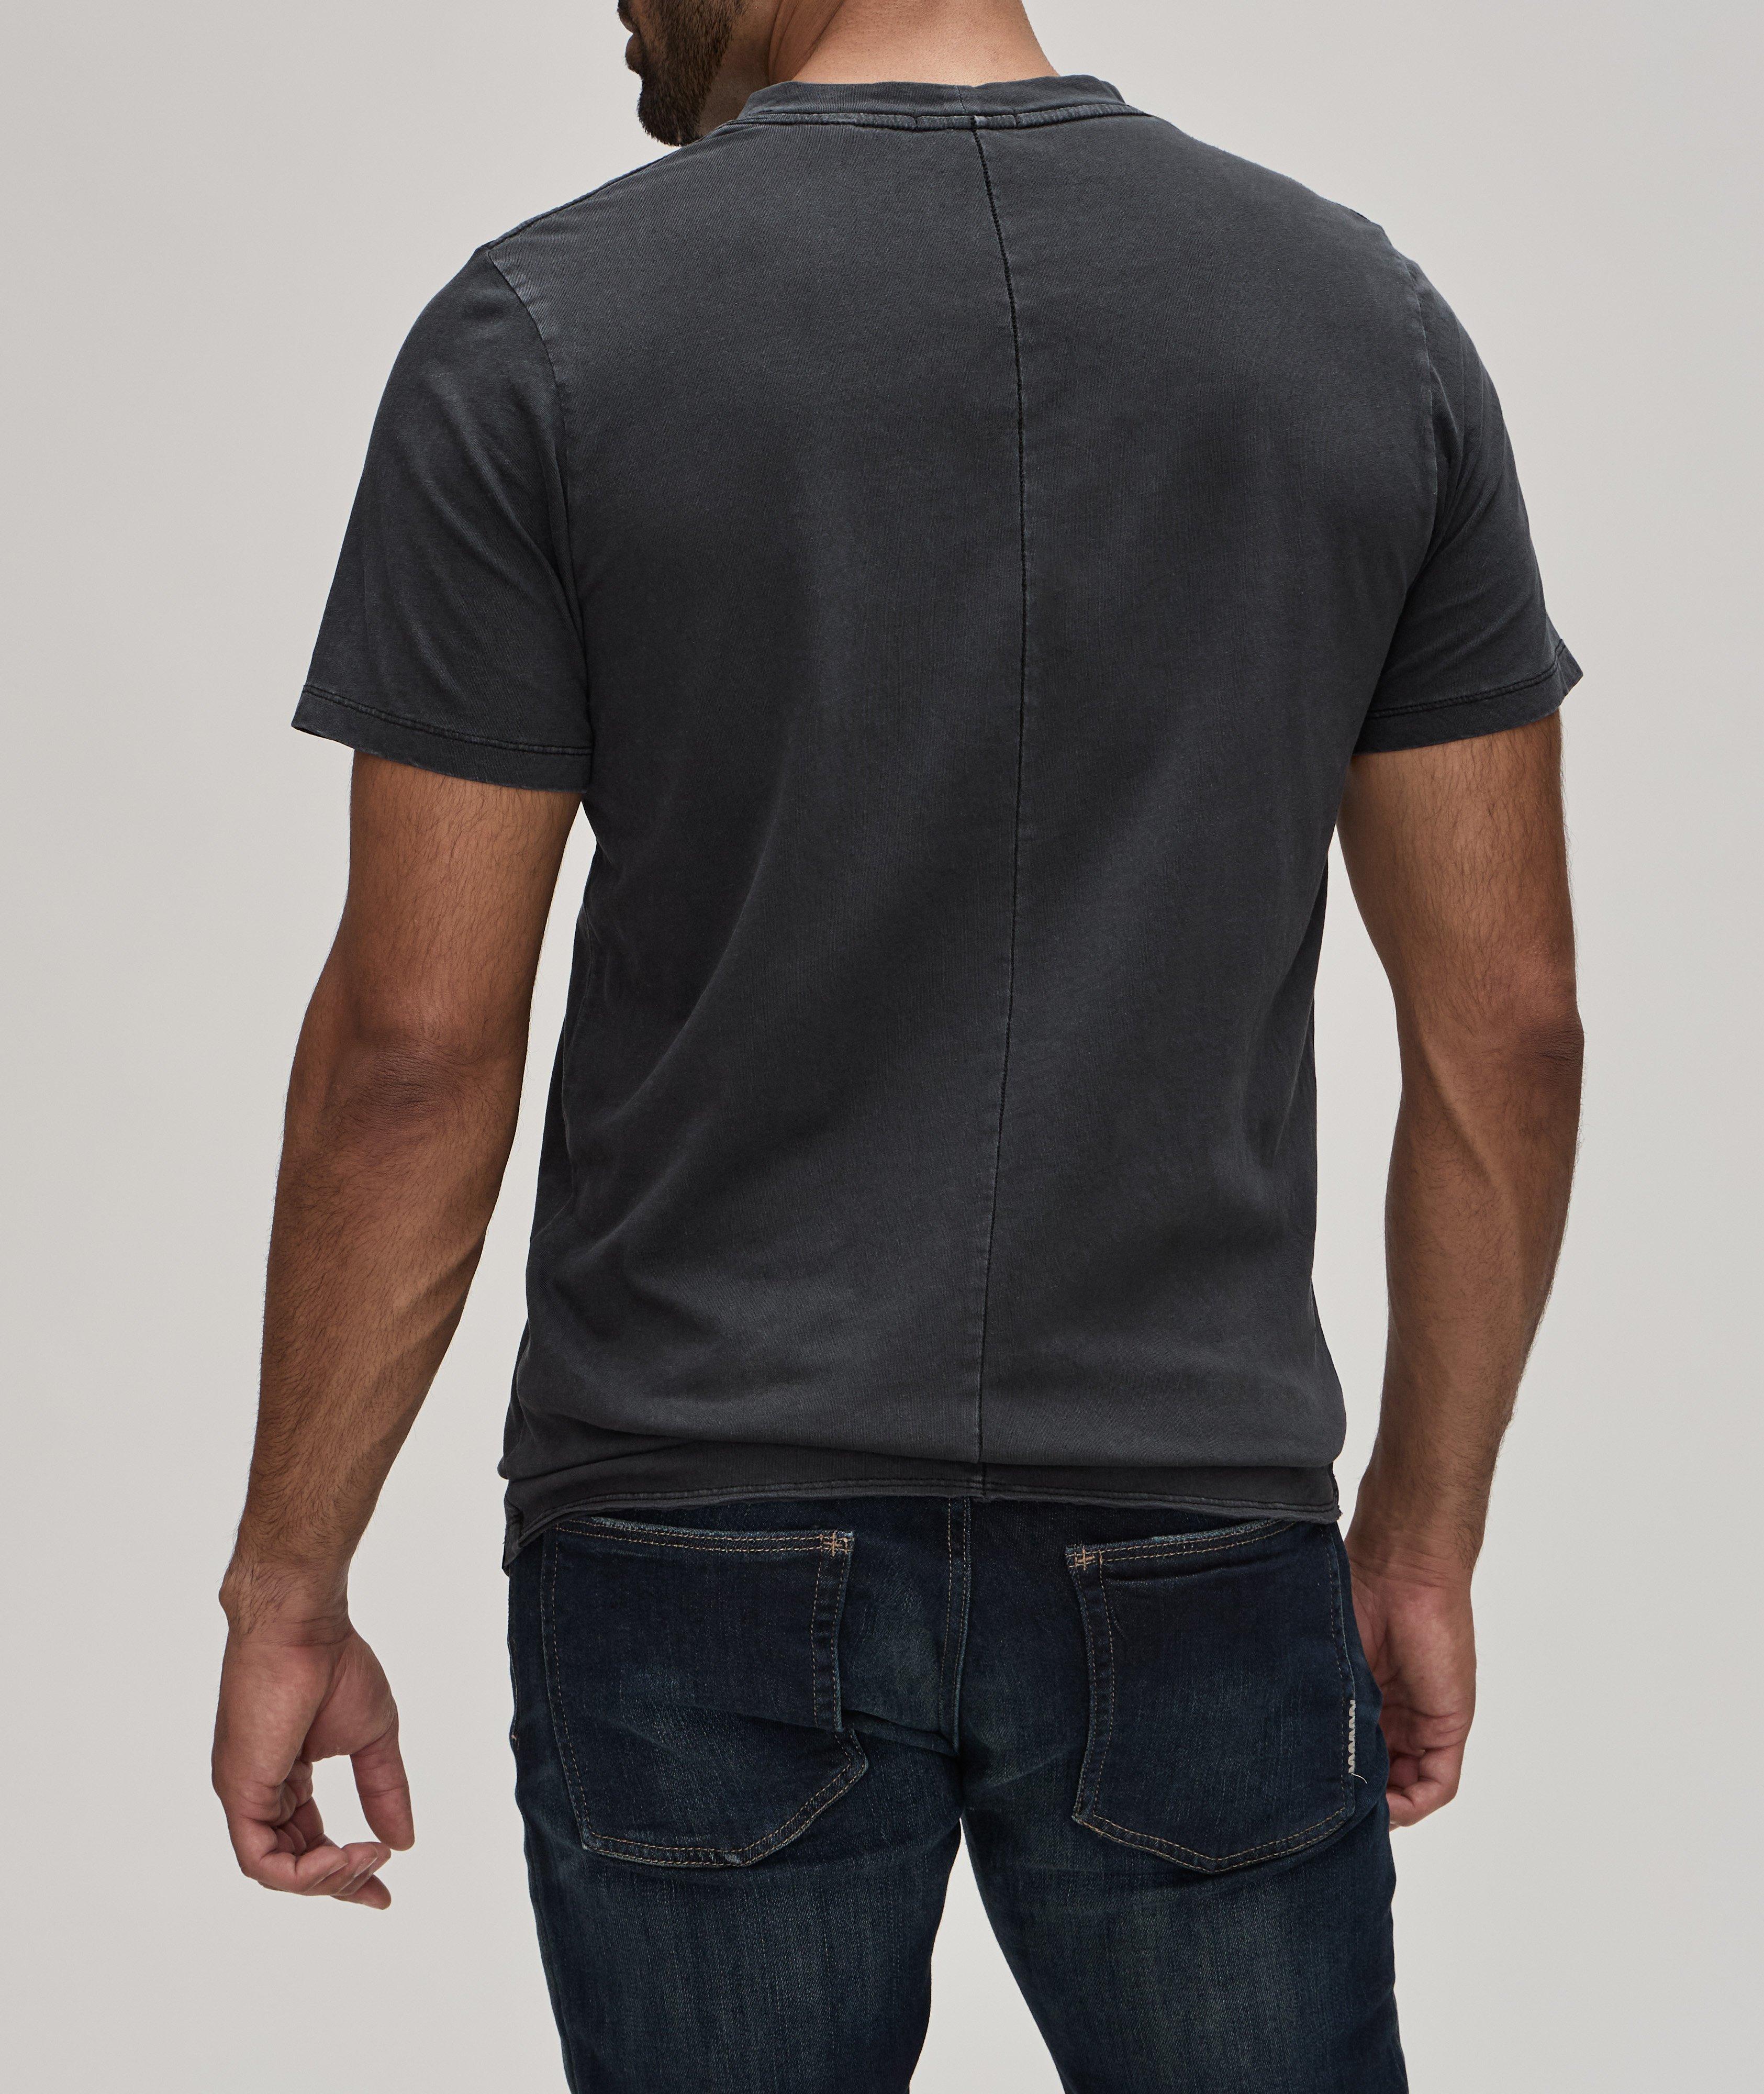  Cotton-Linen Layer T-Shirt  image 2